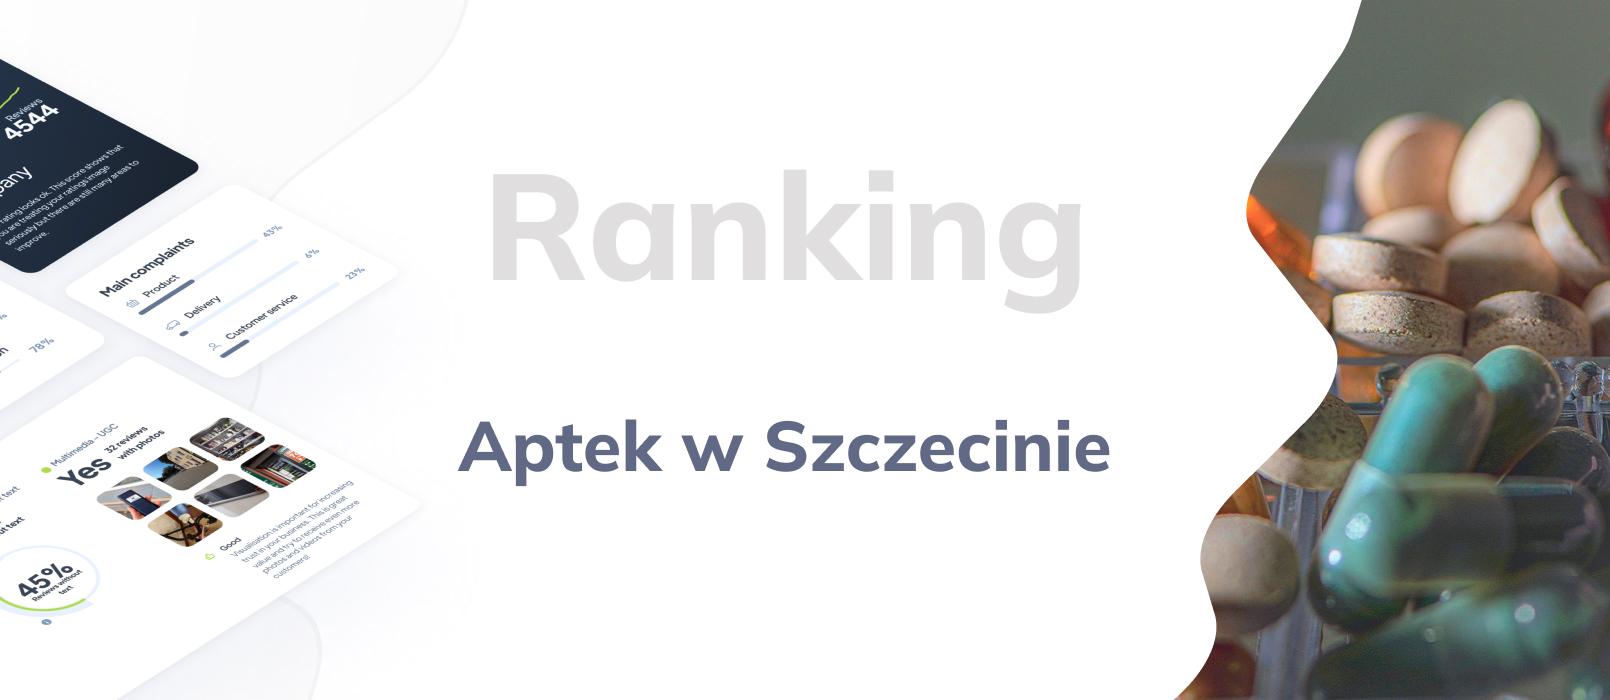 Apteki w Szczecinie - ranking TOP 10